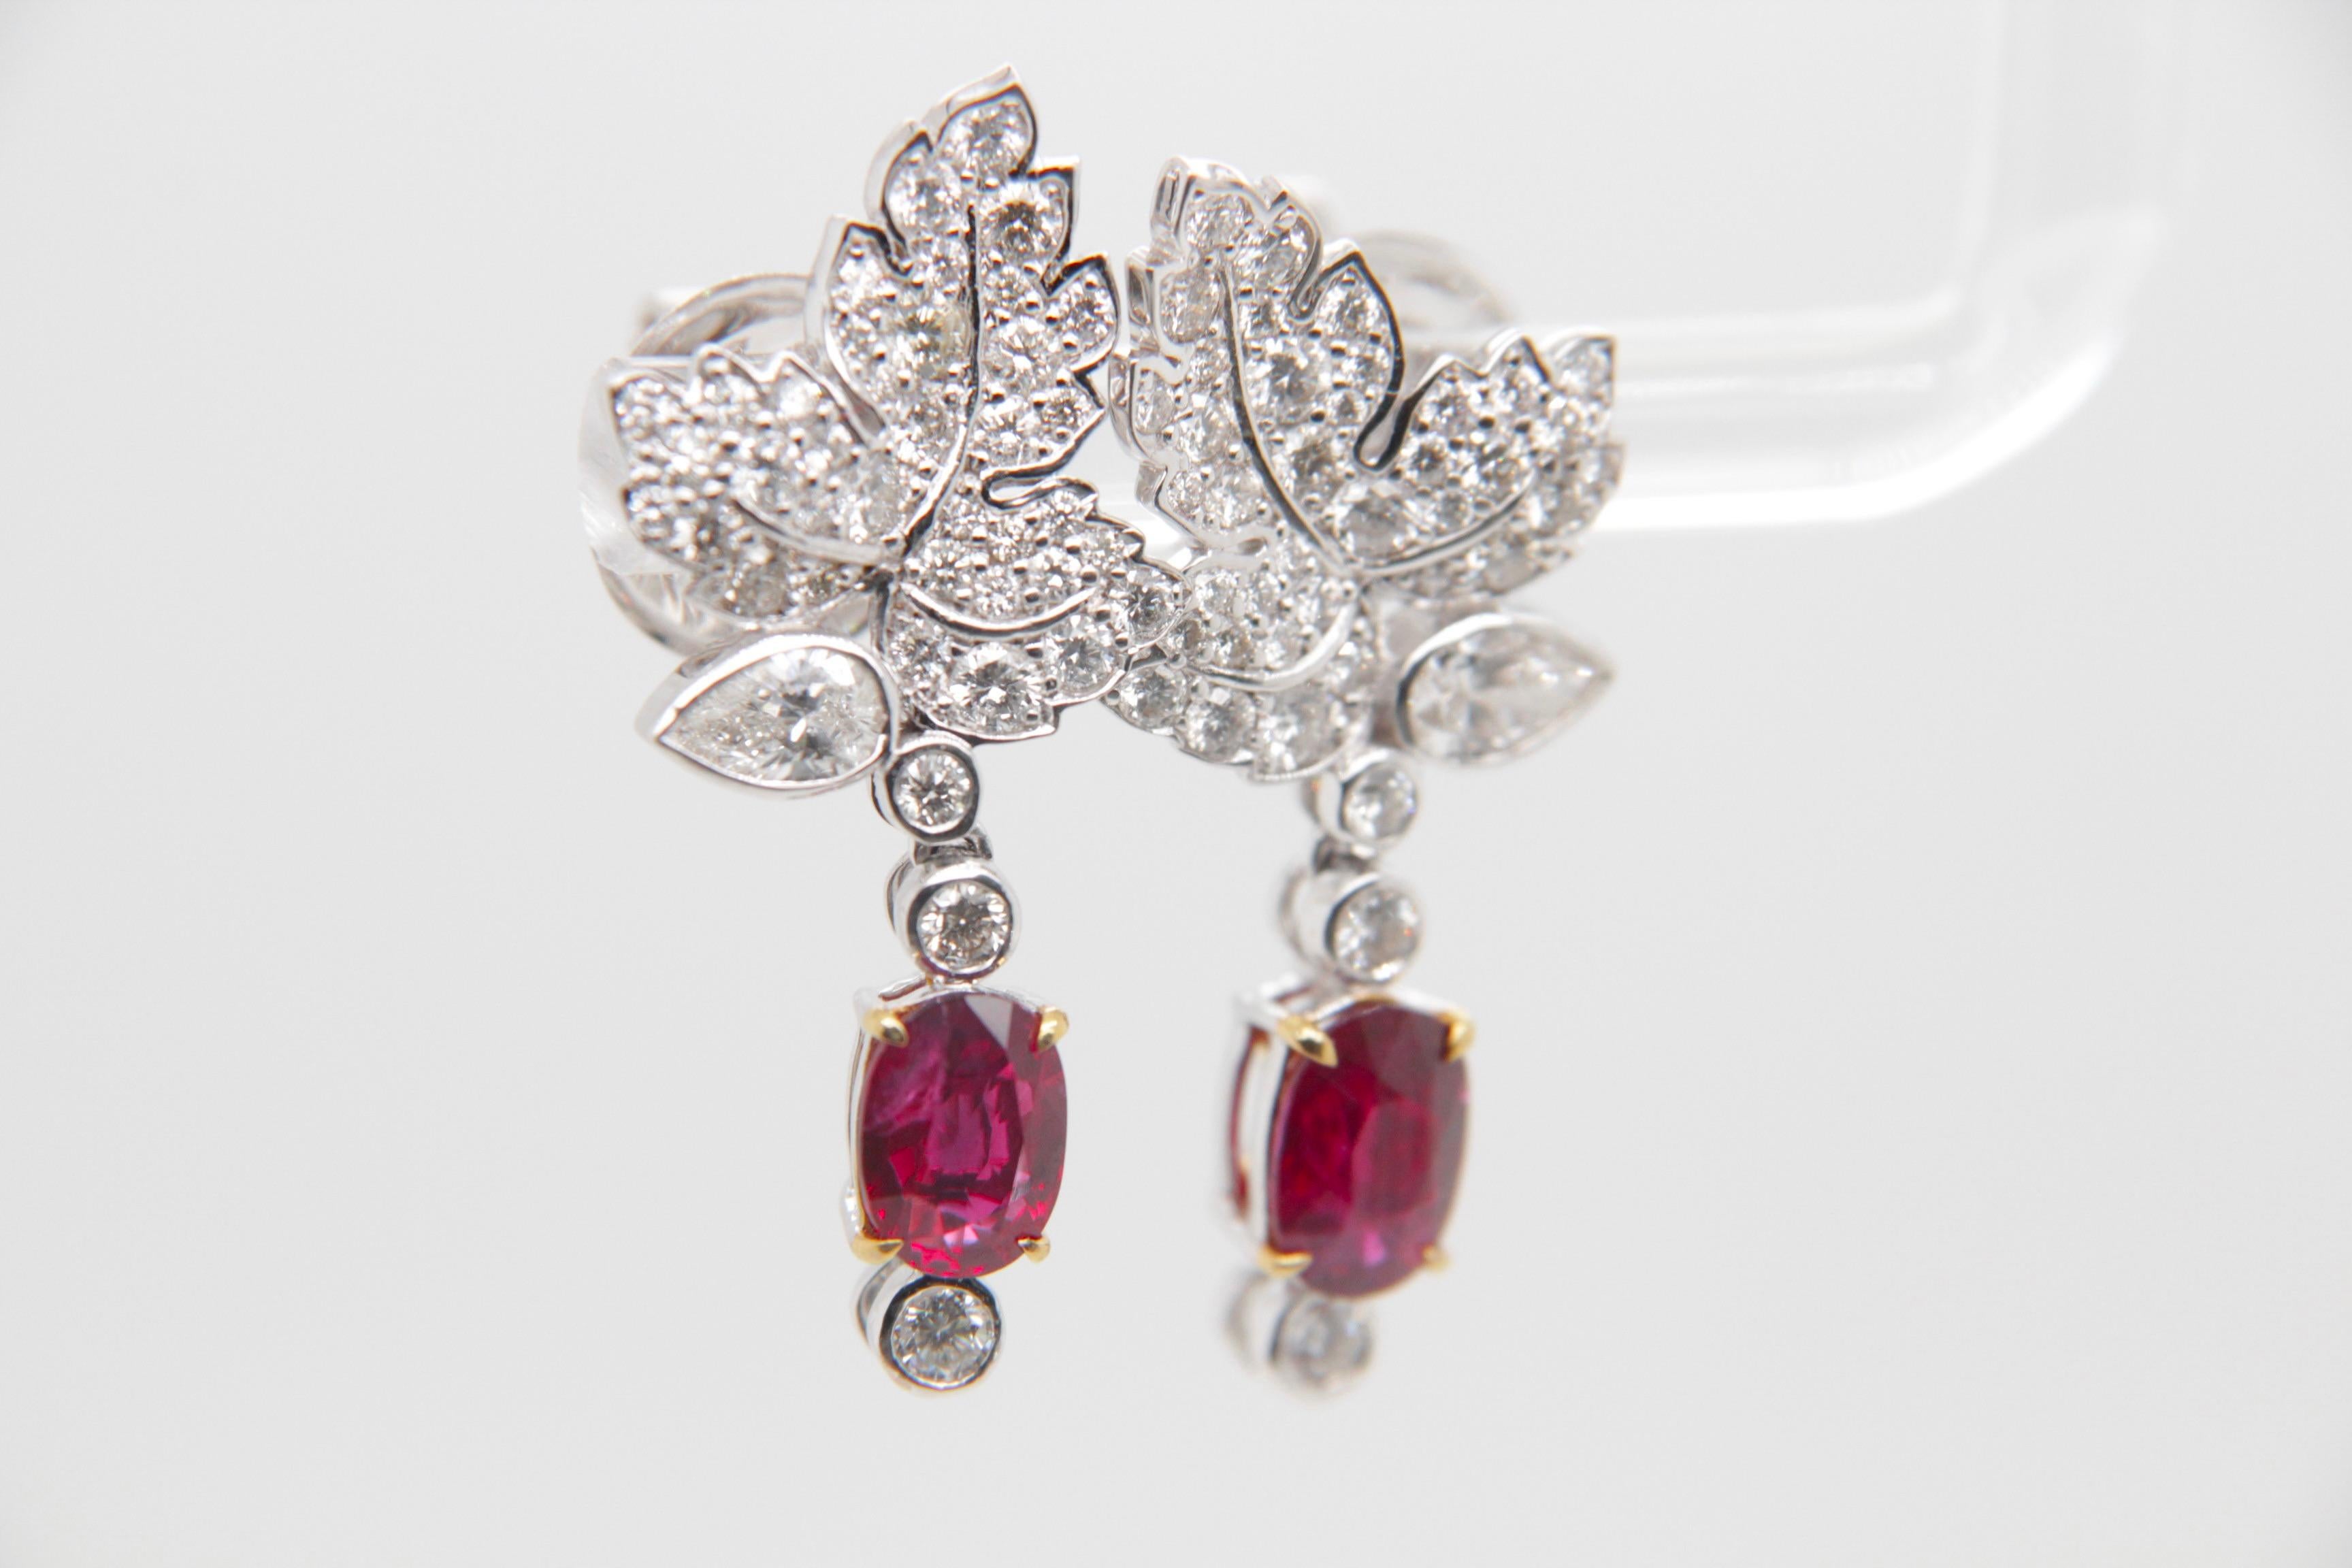 Diese bezaubernden Rubin- und Diamantohrringe von Rewa Jewelry vereinen klassische Inspiration mit zeitgenössischer Eleganz - ein wahres Meisterwerk, das das Engagement der Marke für außergewöhnliche Handwerkskunst und zeitlosen Charme